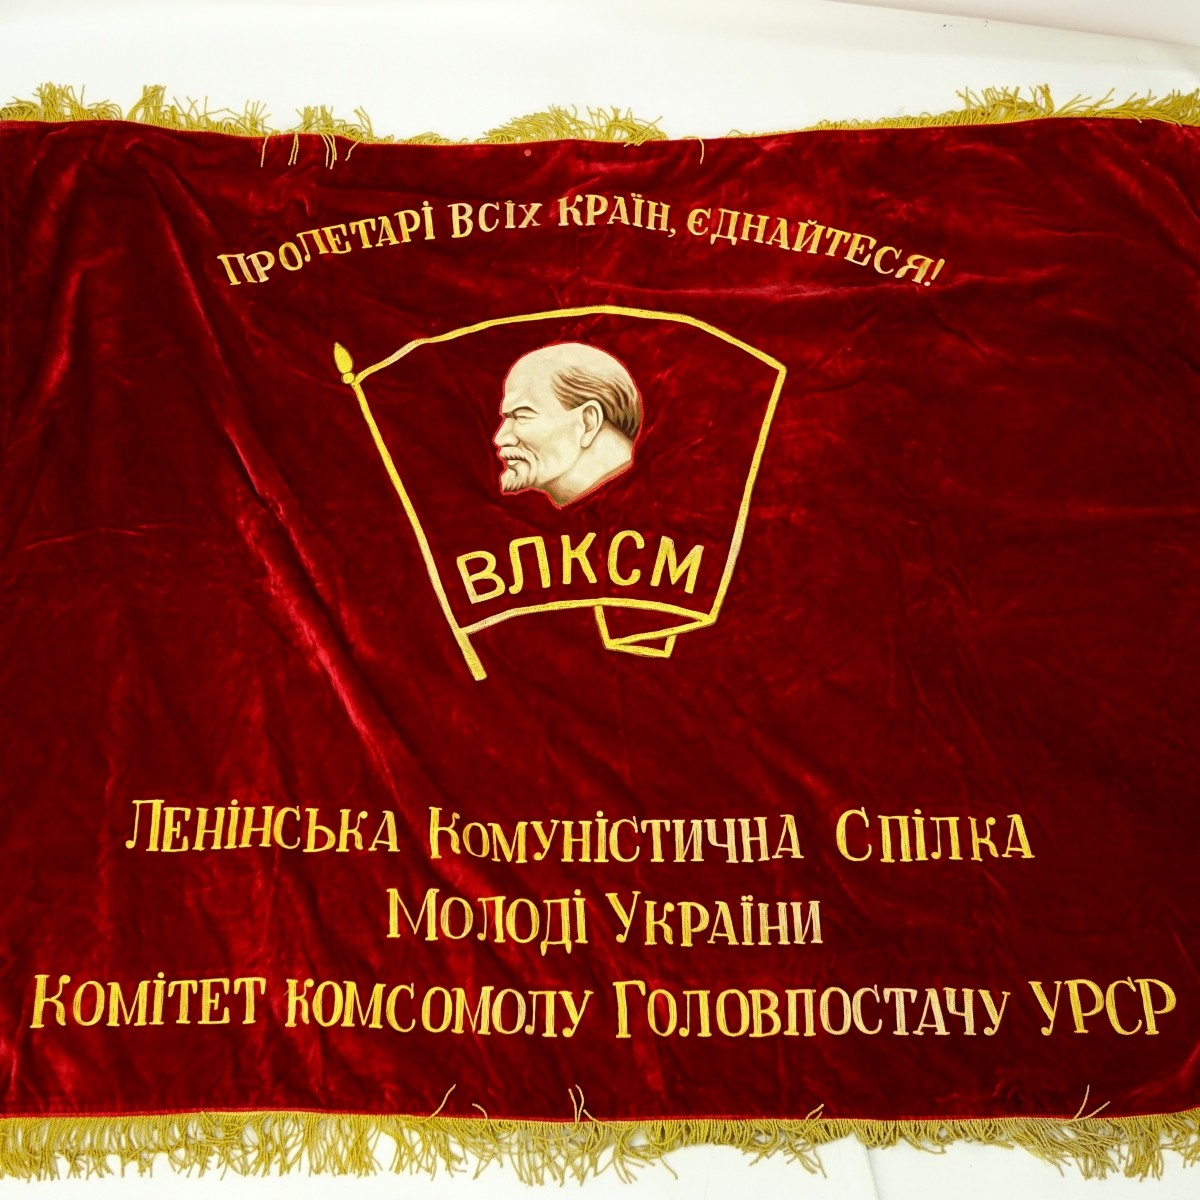 20th Century Russian Soviet Era Lenin-vlksm